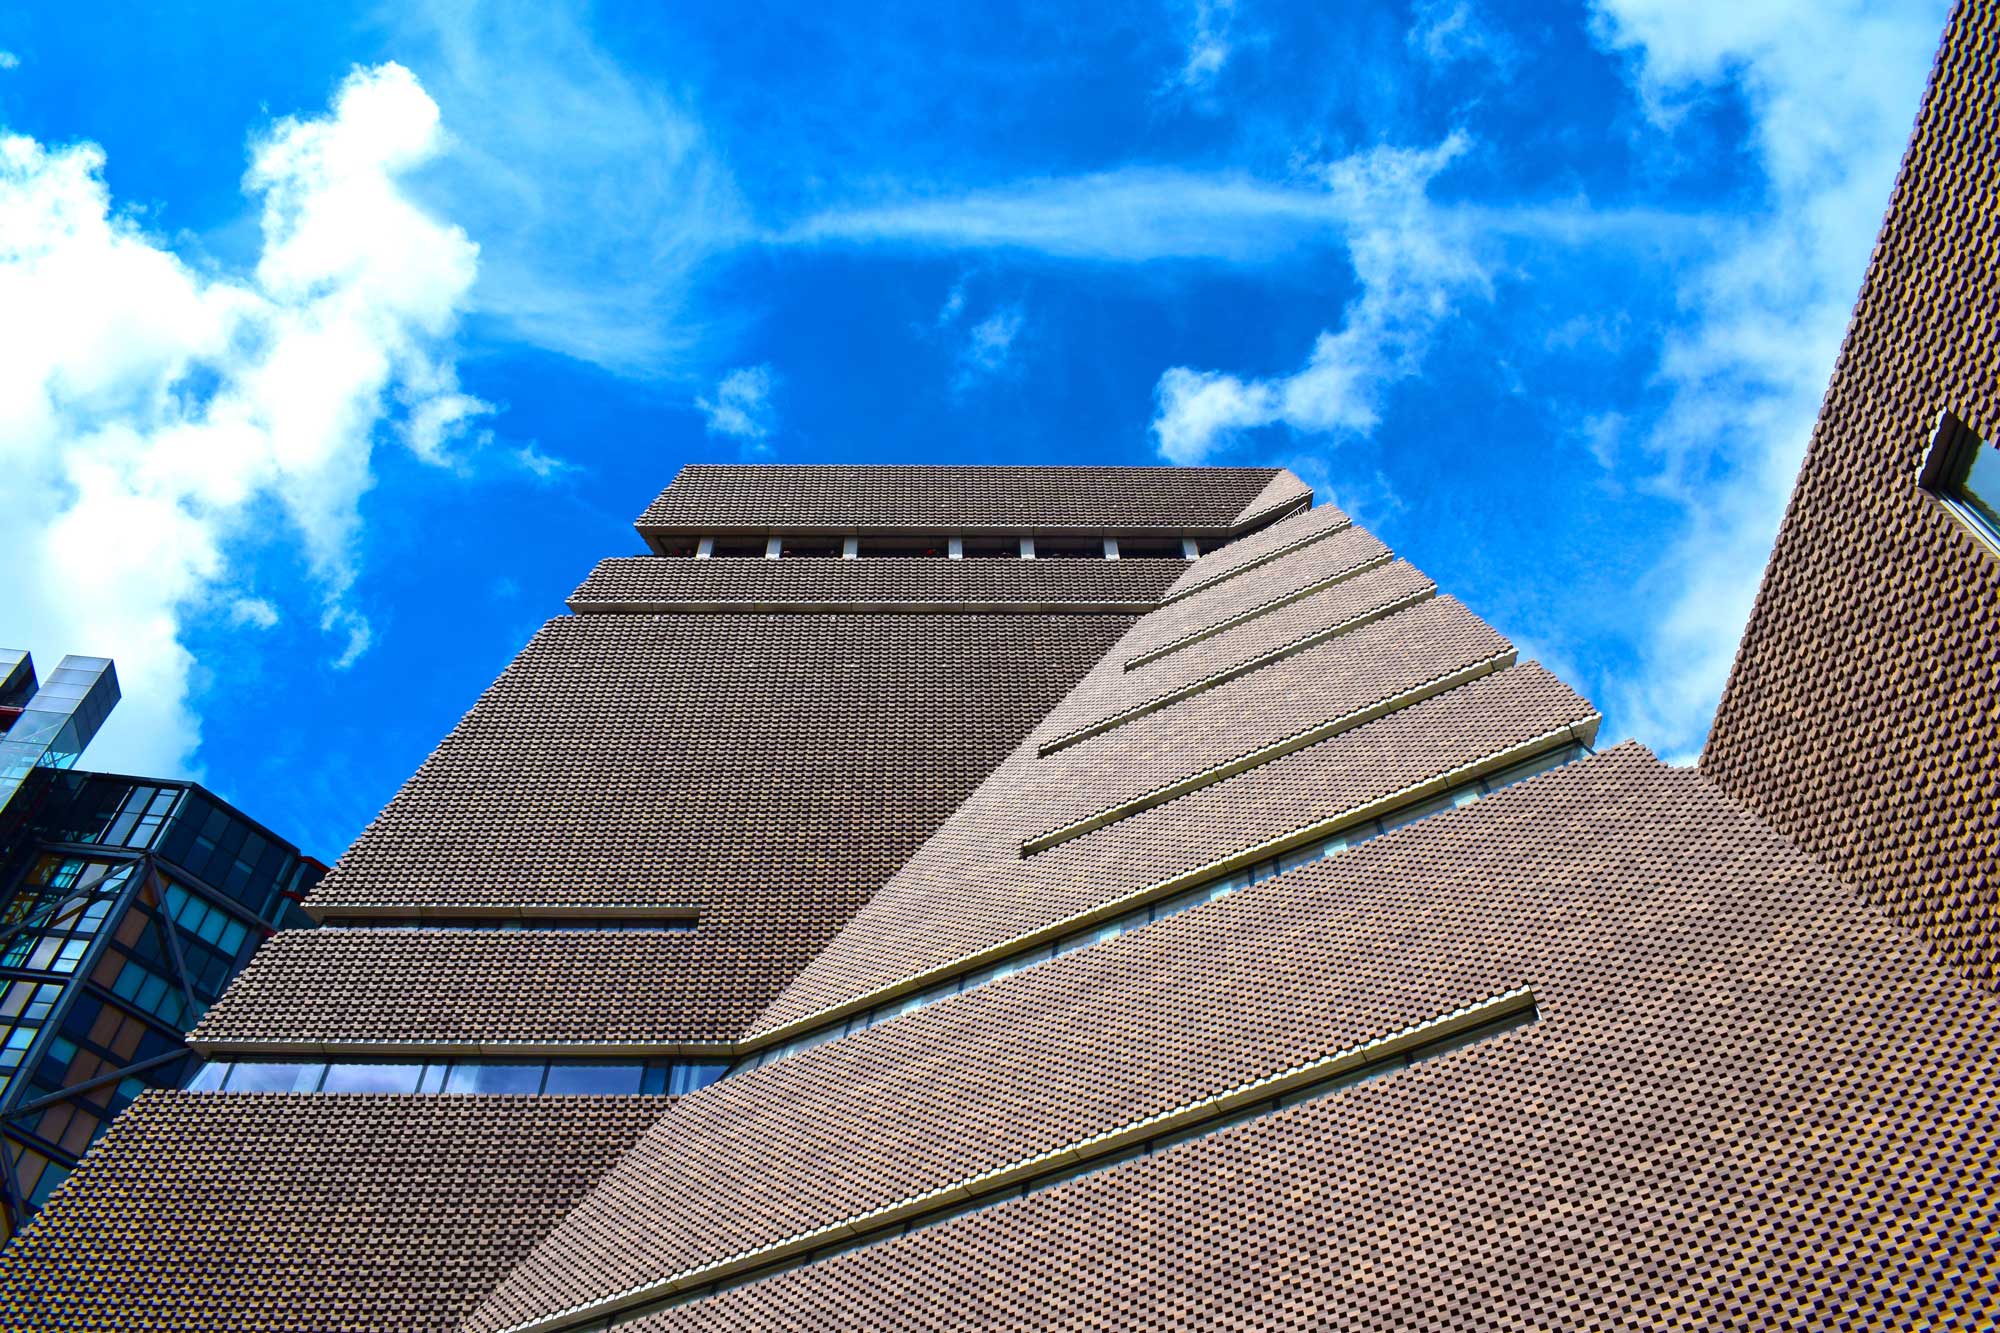 The Tate Modern OAG 06